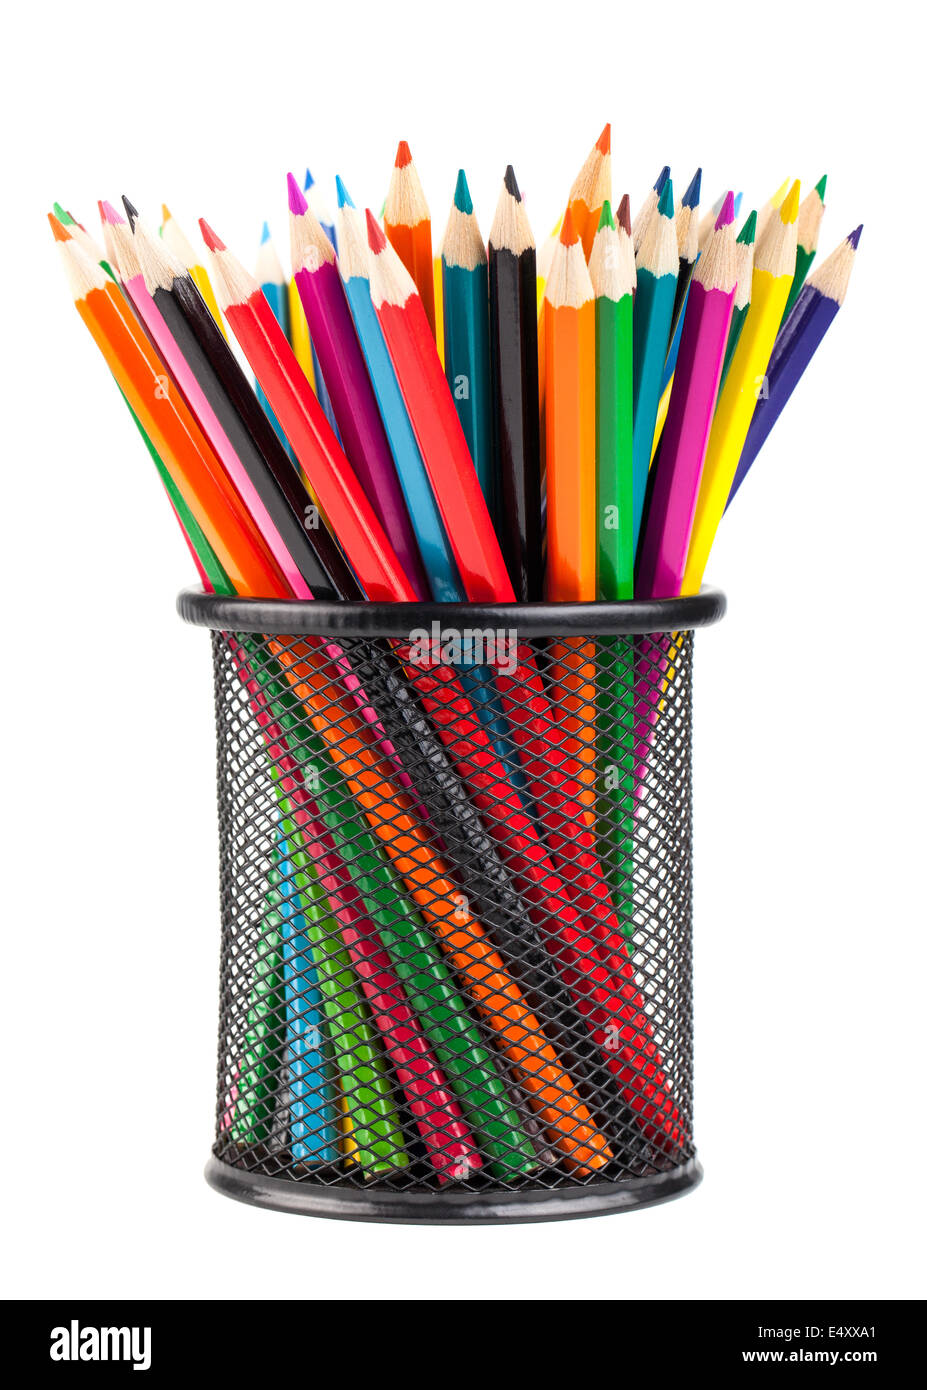 Des crayons de couleurs différentes en métal Banque D'Images